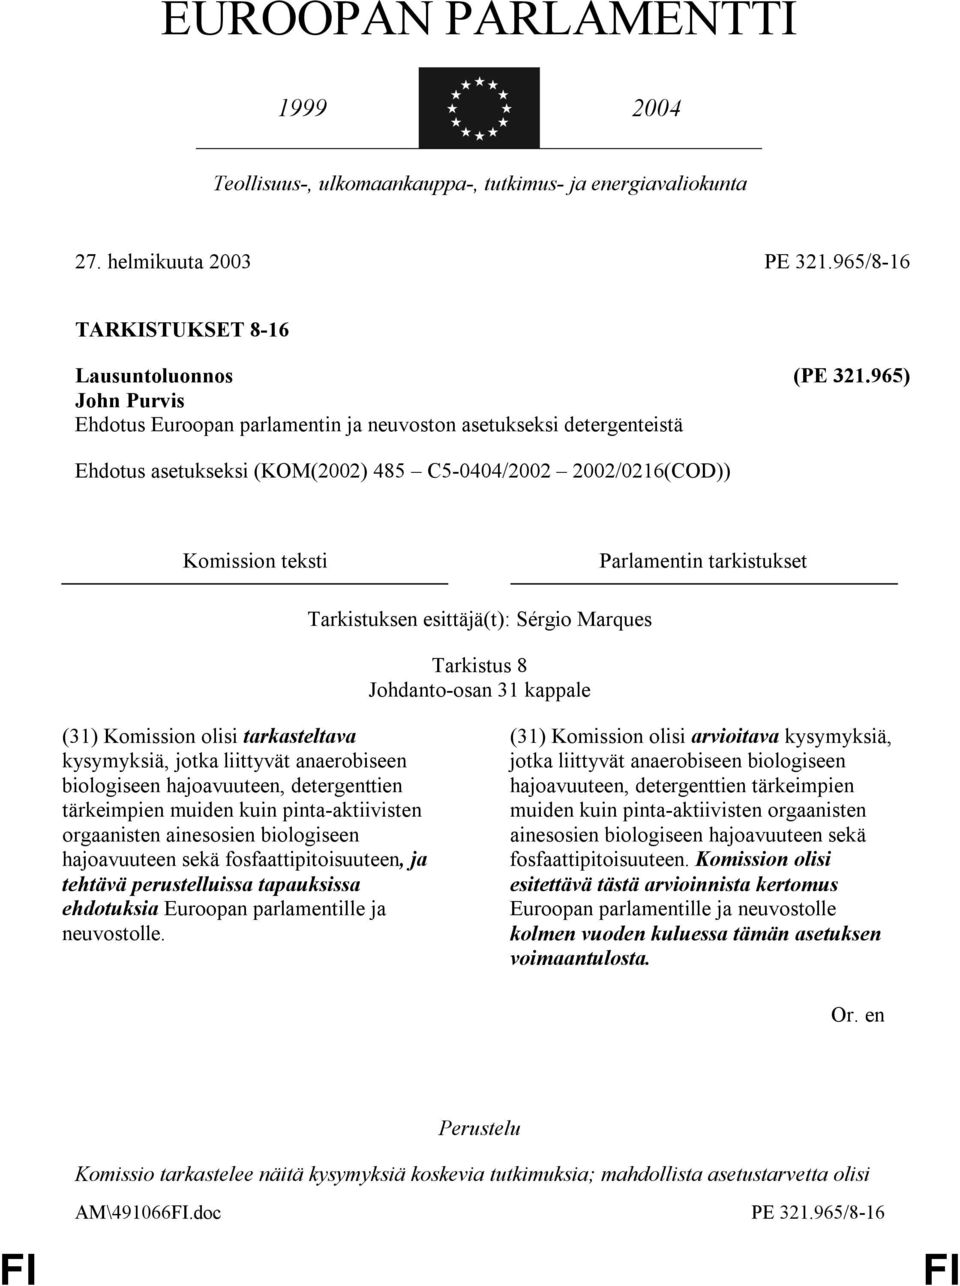 Tarkistuksen esittäjä(t): Sérgio Marques Tarkistus 8 Johdanto-osan 31 kappale (31) Komission olisi tarkasteltava kysymyksiä, jotka liittyvät anaerobiseen biologiseen hajoavuuteen, detergenttien